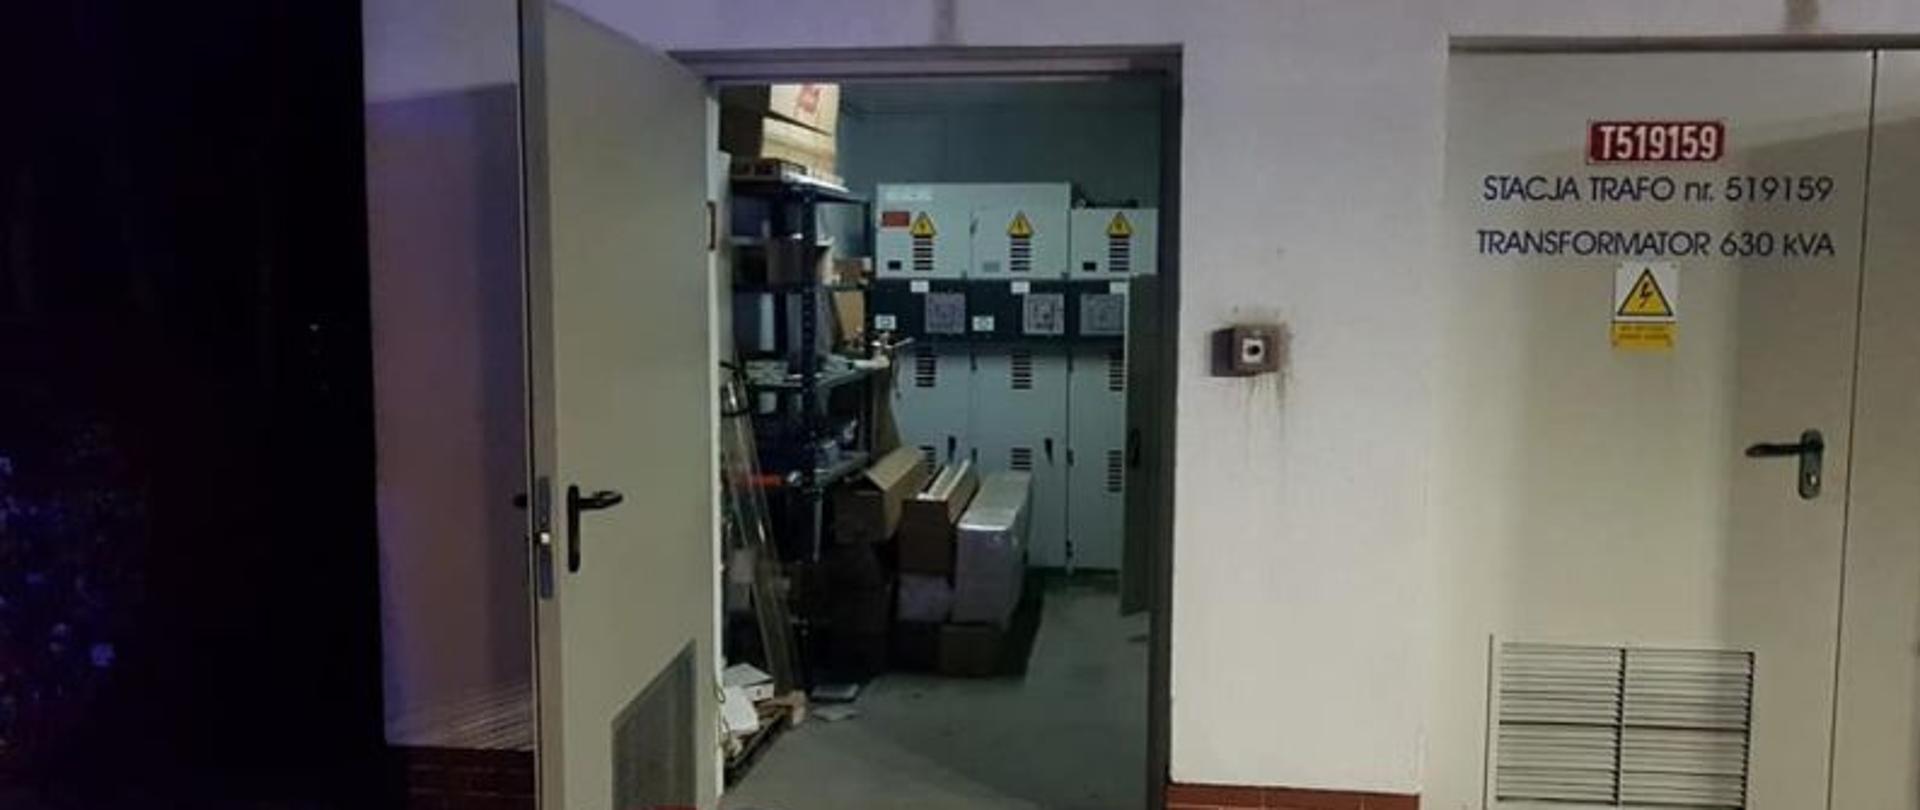 Zdjęcie przedstawia pomieszczenie w którym wybuchł pożar od zewnątrz.Pomieszczenie ma otwarte drzwi. W środku pali się światło przy drzwiach stoi gaśnica. Zdjęcie wykonane po zmierzchu.